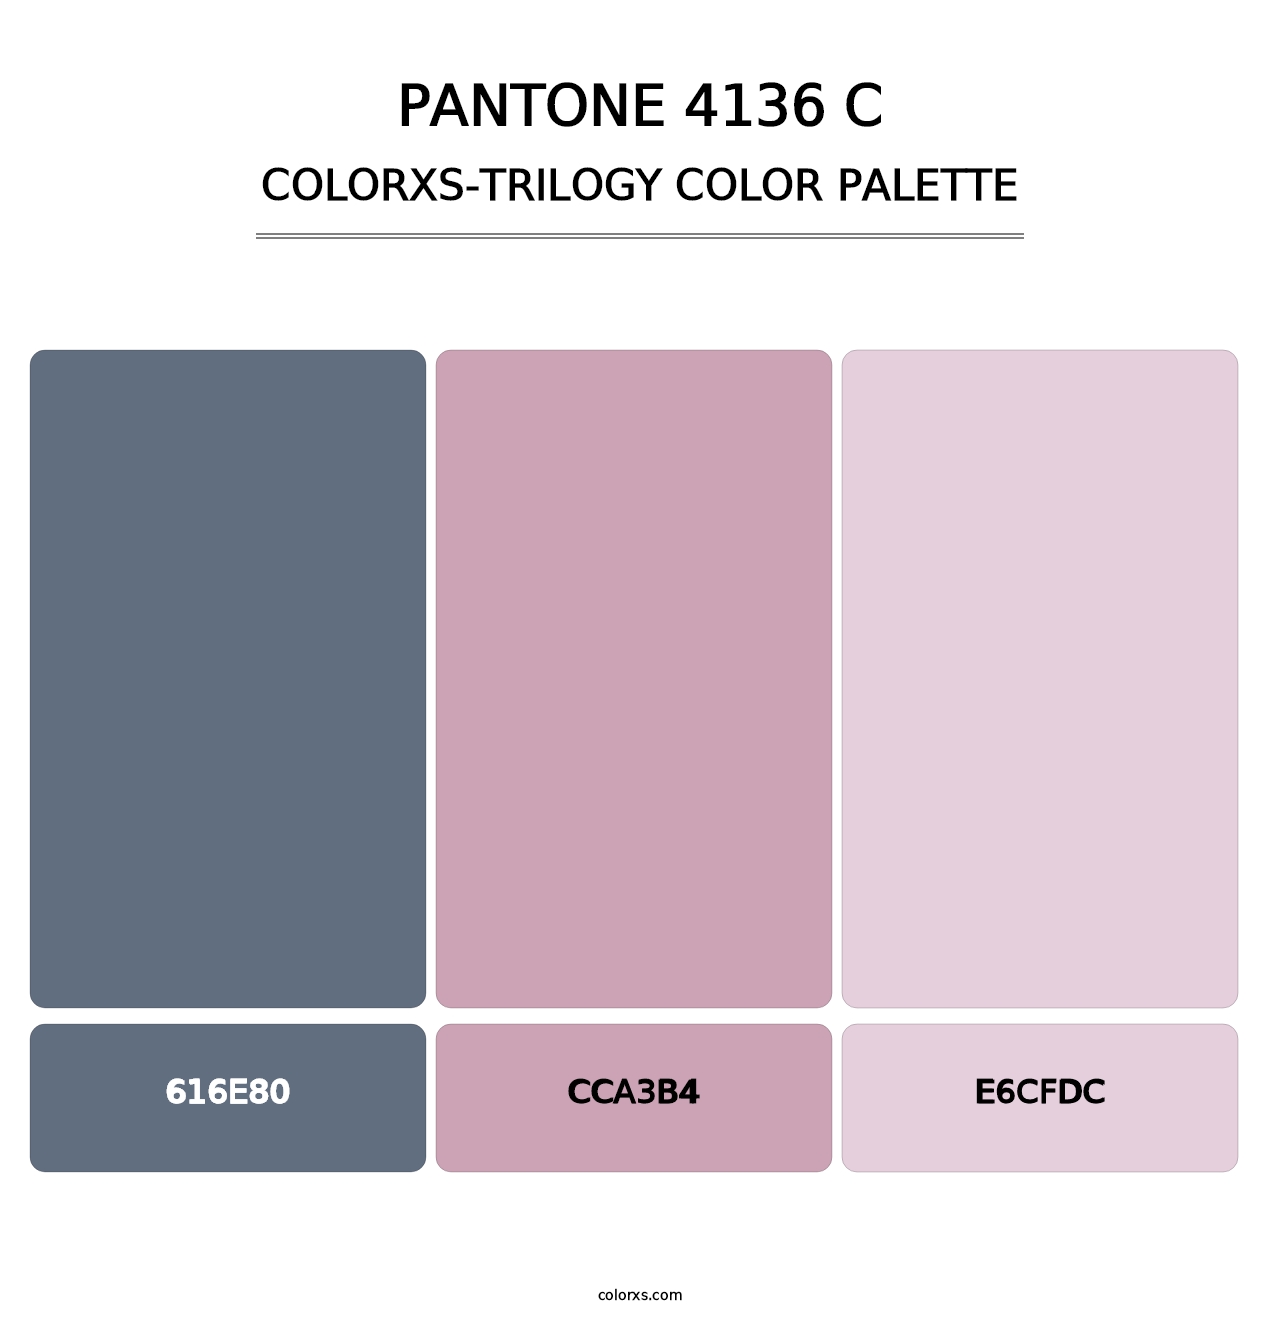 PANTONE 4136 C - Colorxs Trilogy Palette